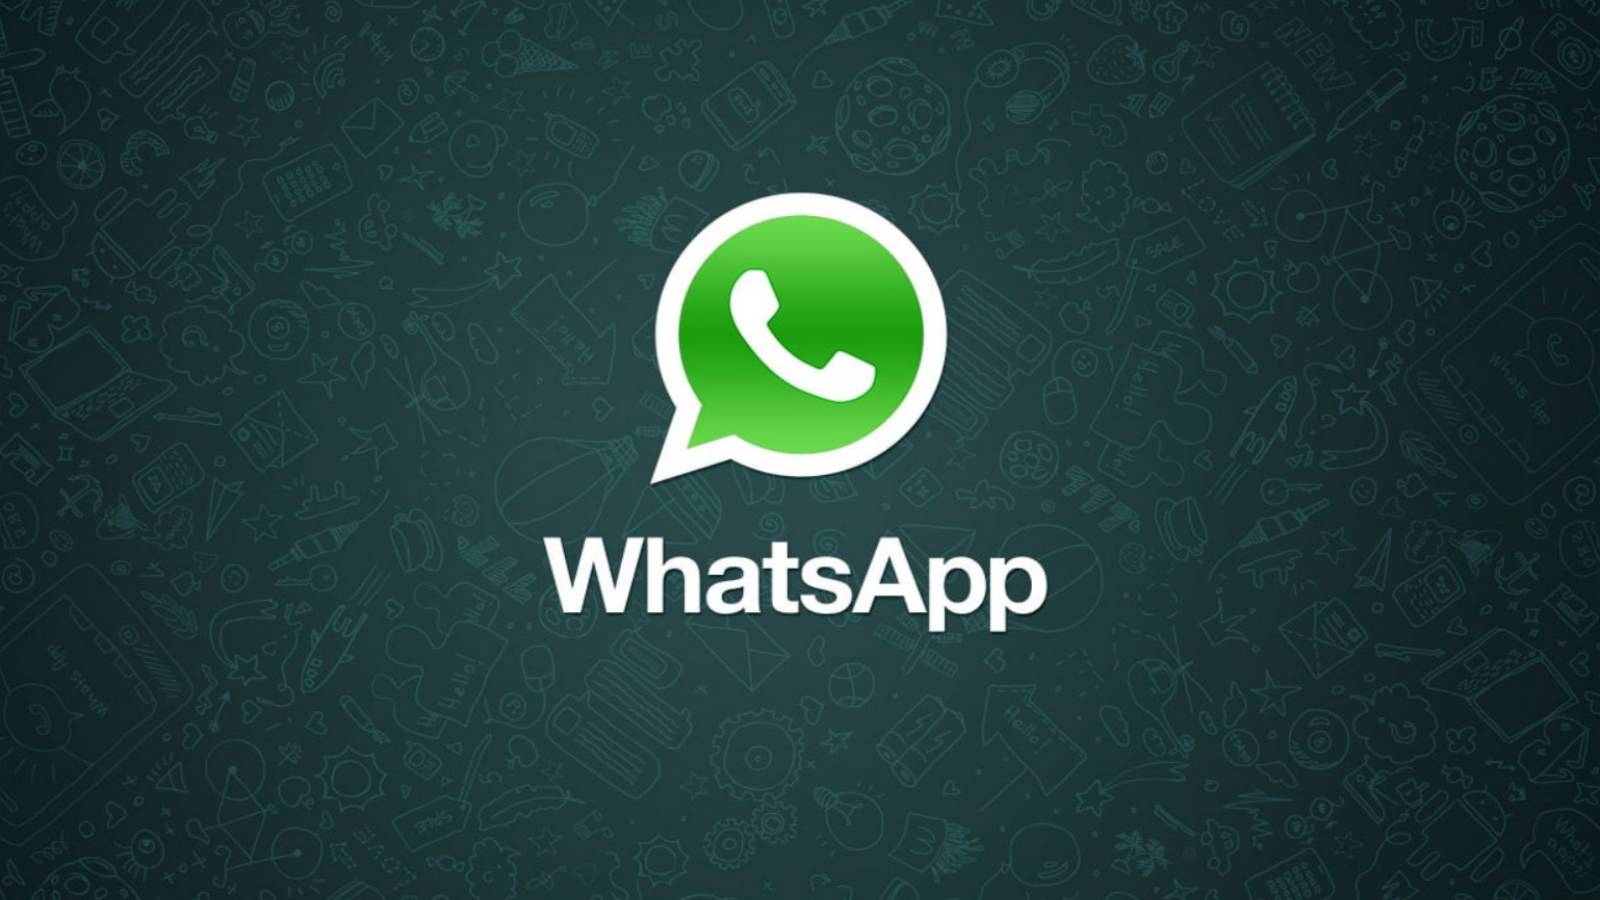 WhatsApp 3 GEHEIME Tricks, die Millionen von Menschen NICHT kennen